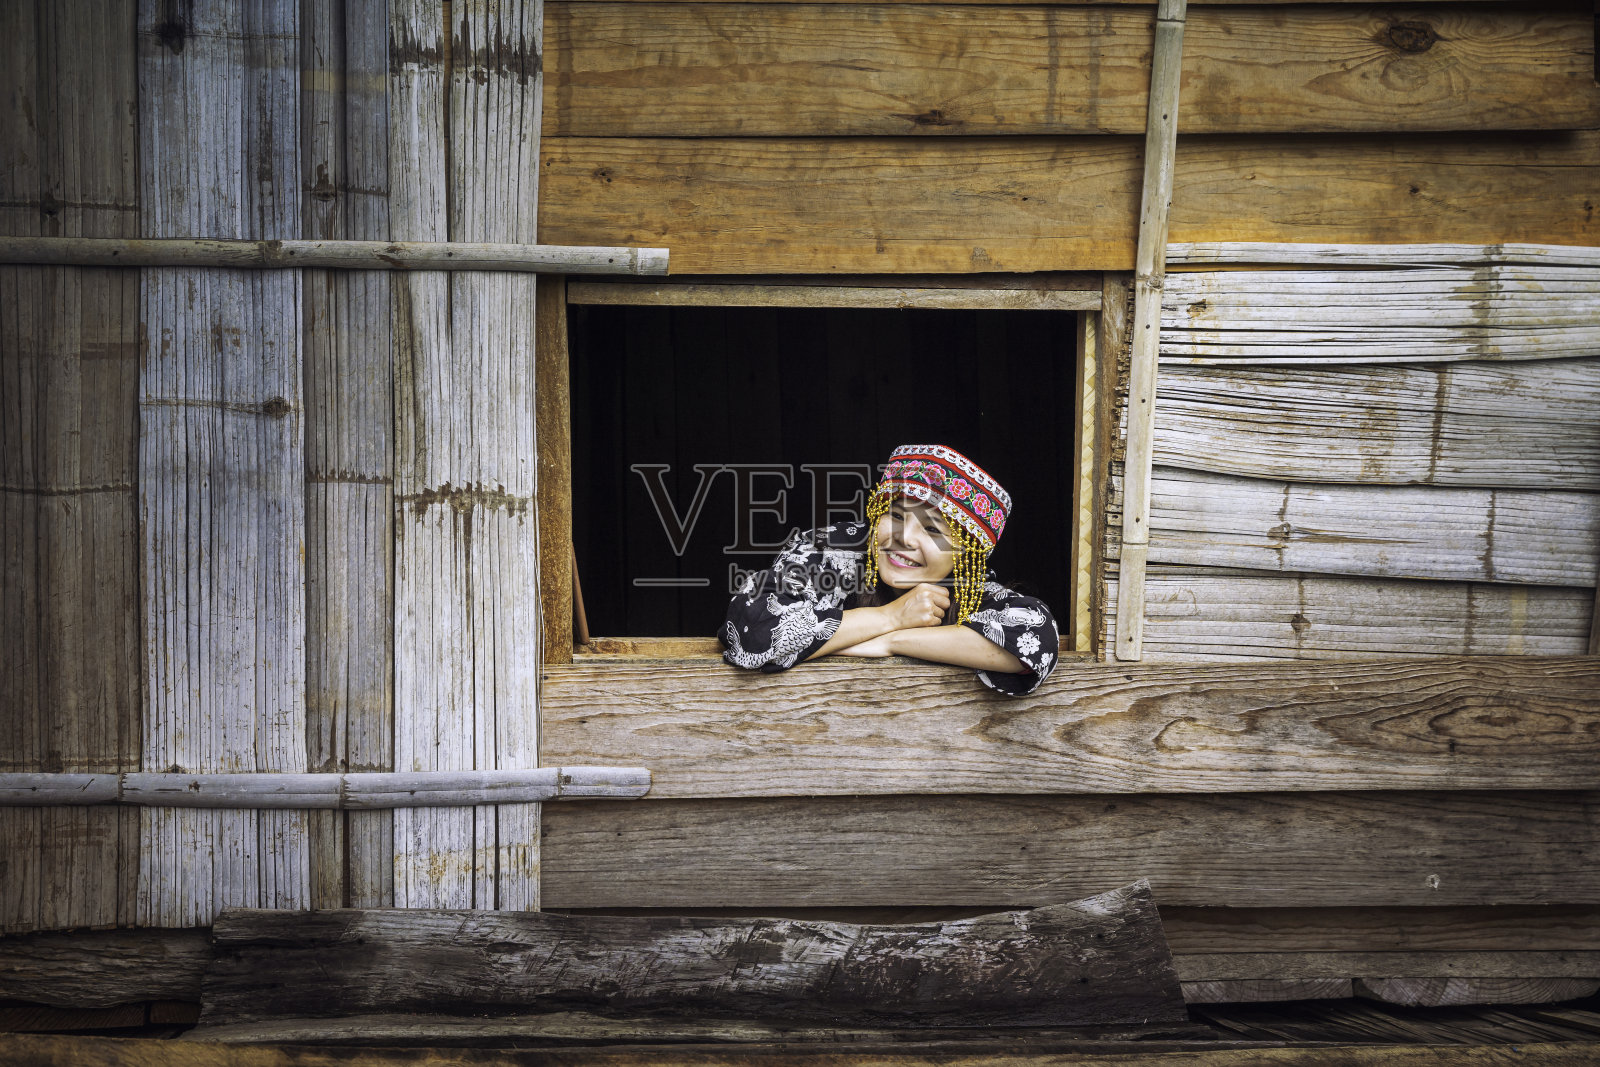 穿着山地部落服装的游客。一个阿卡在窗户上。游客穿着苗族山部落的衣服，坐着移动，靠窗。照片摄影图片